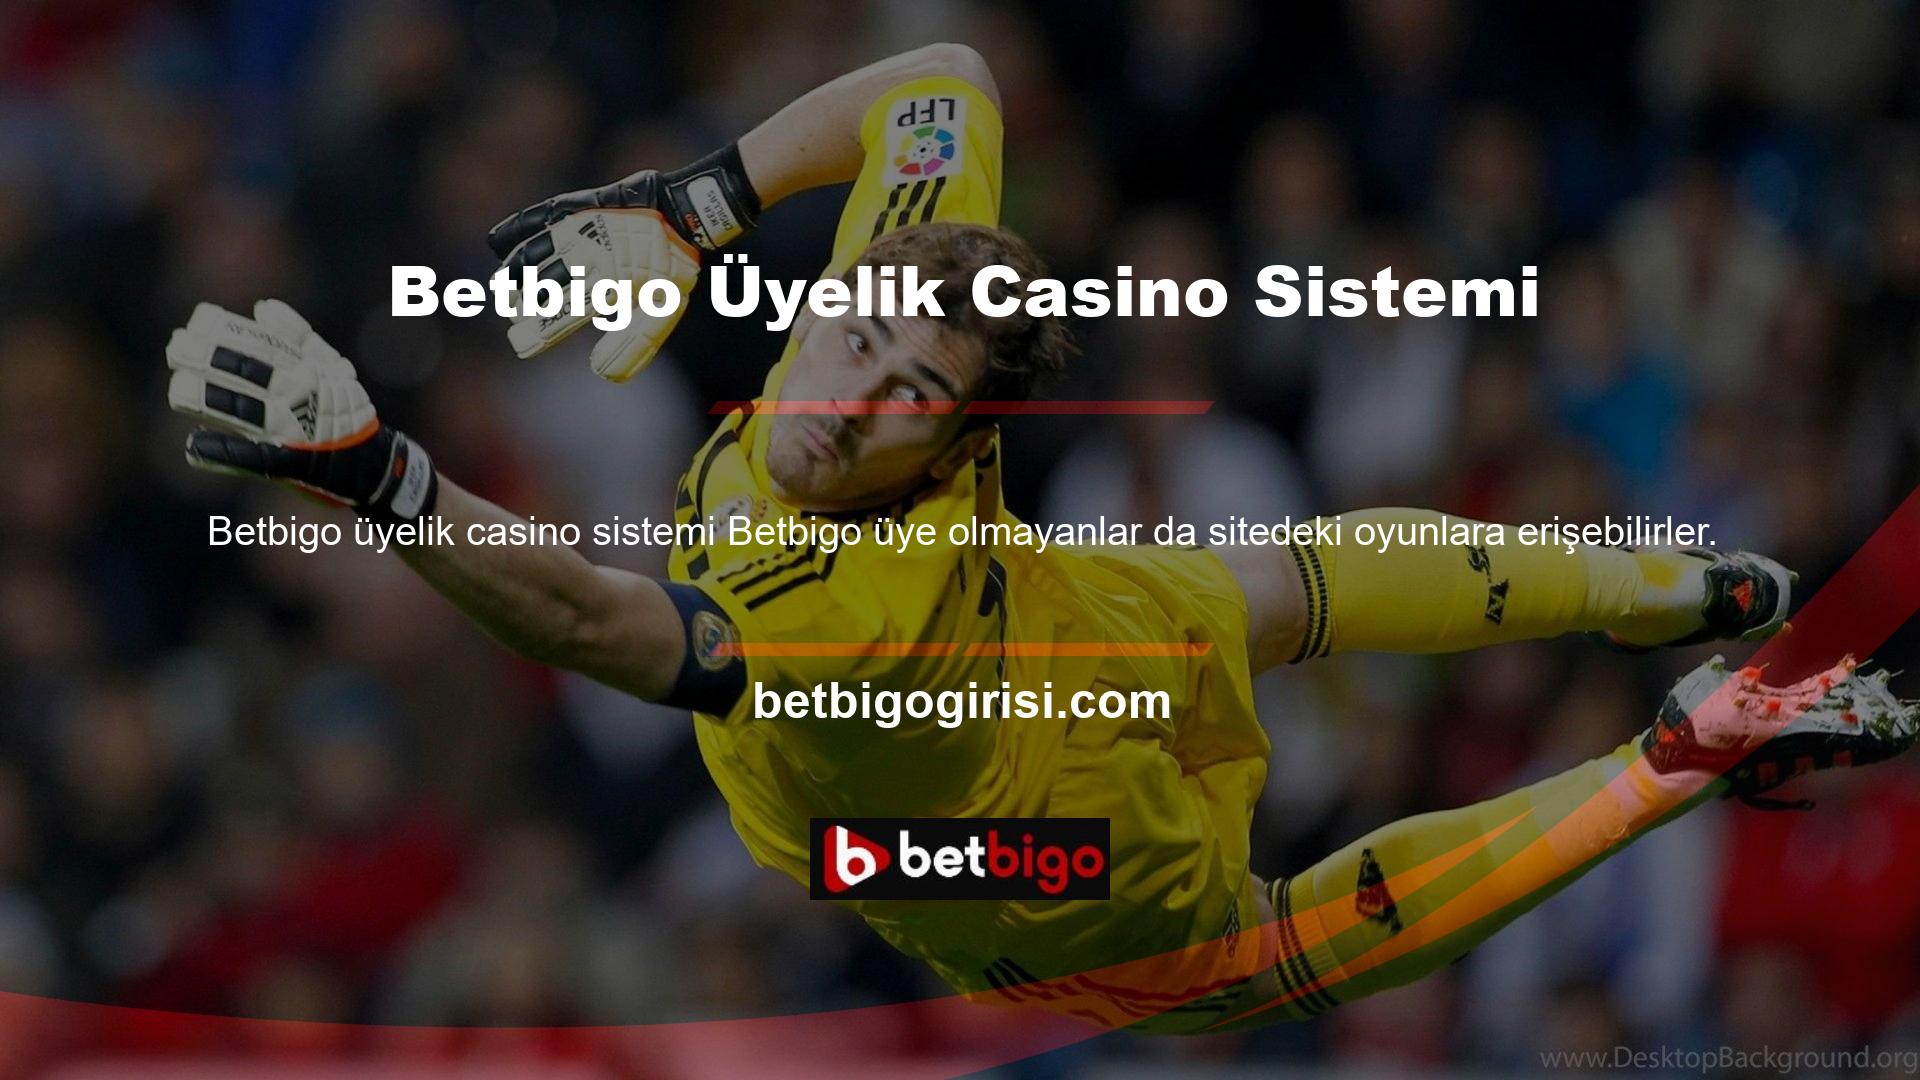 Üye olarak Betbigo üyelik casino sistemi web sitesinde çok sayıda ödül ve fırsata erişebilirsiniz